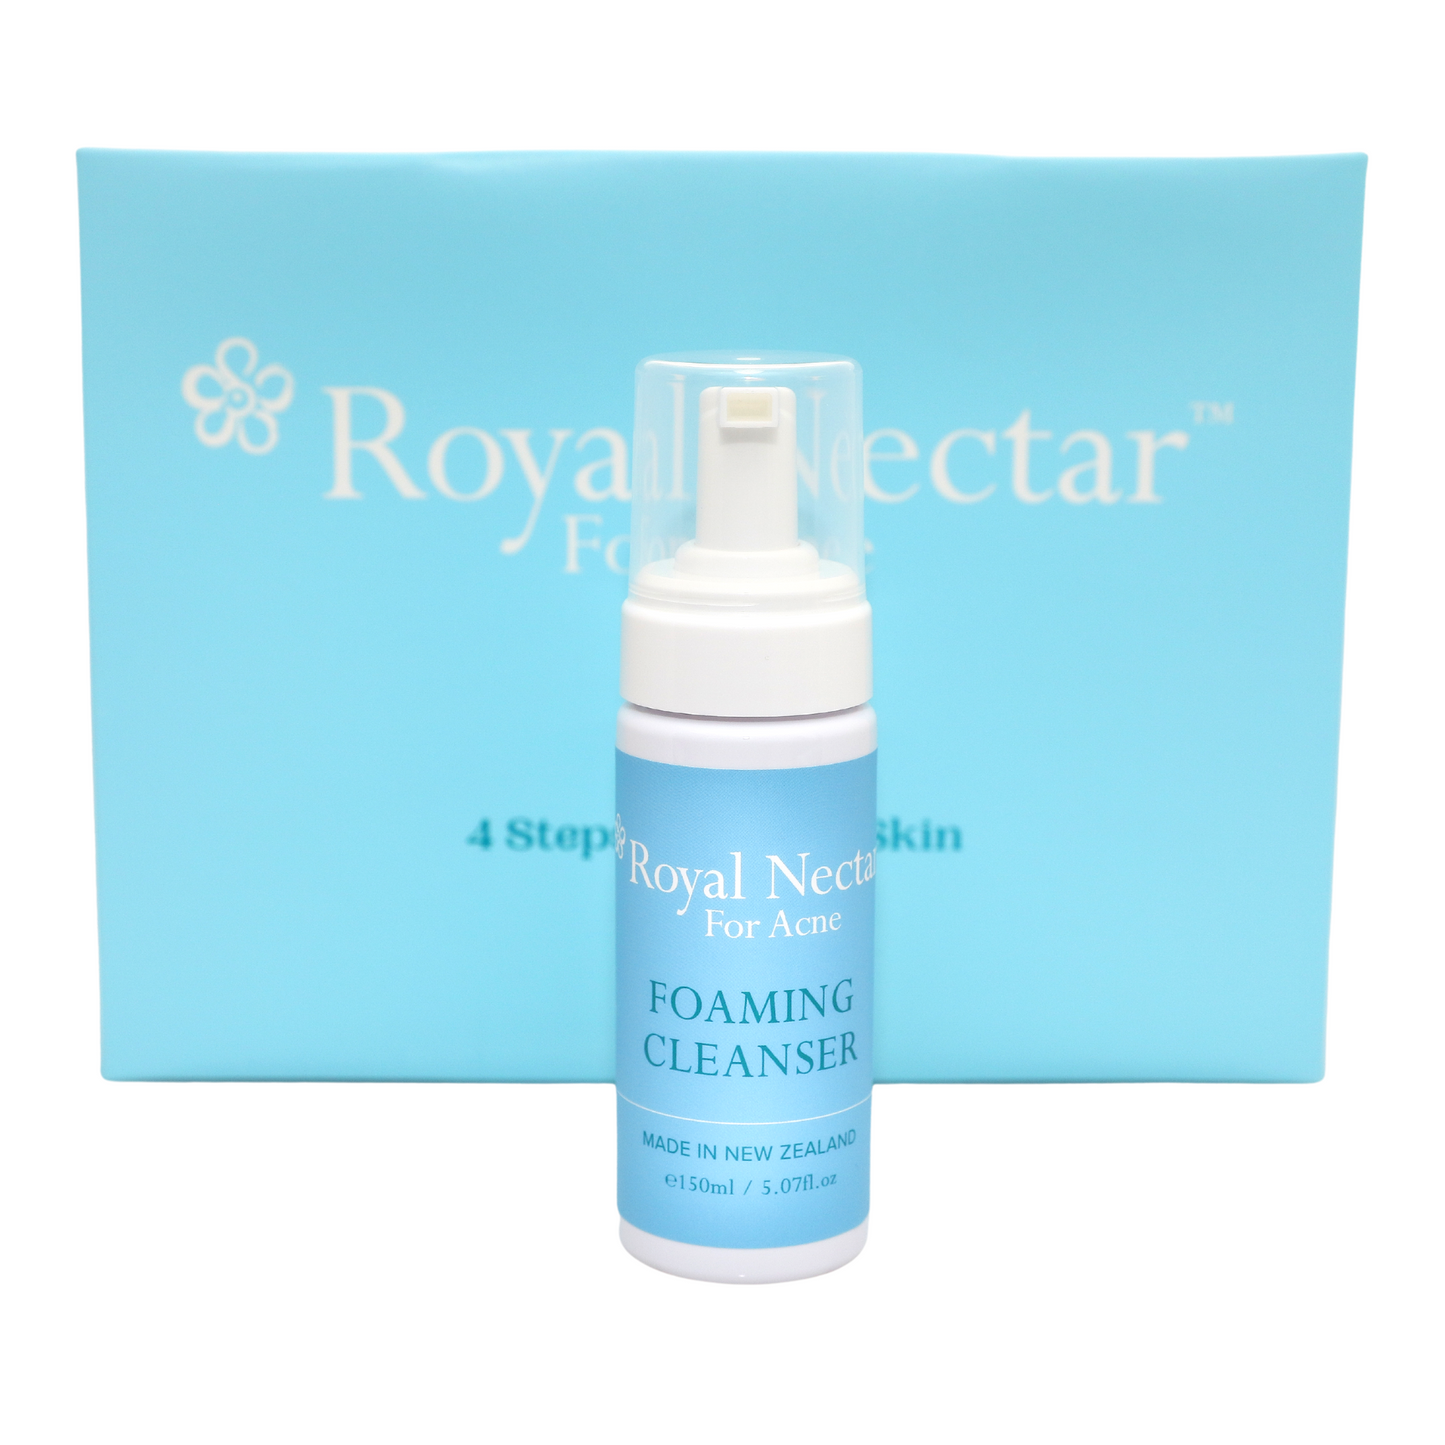 NEW - Royal Nectar Acne Kit